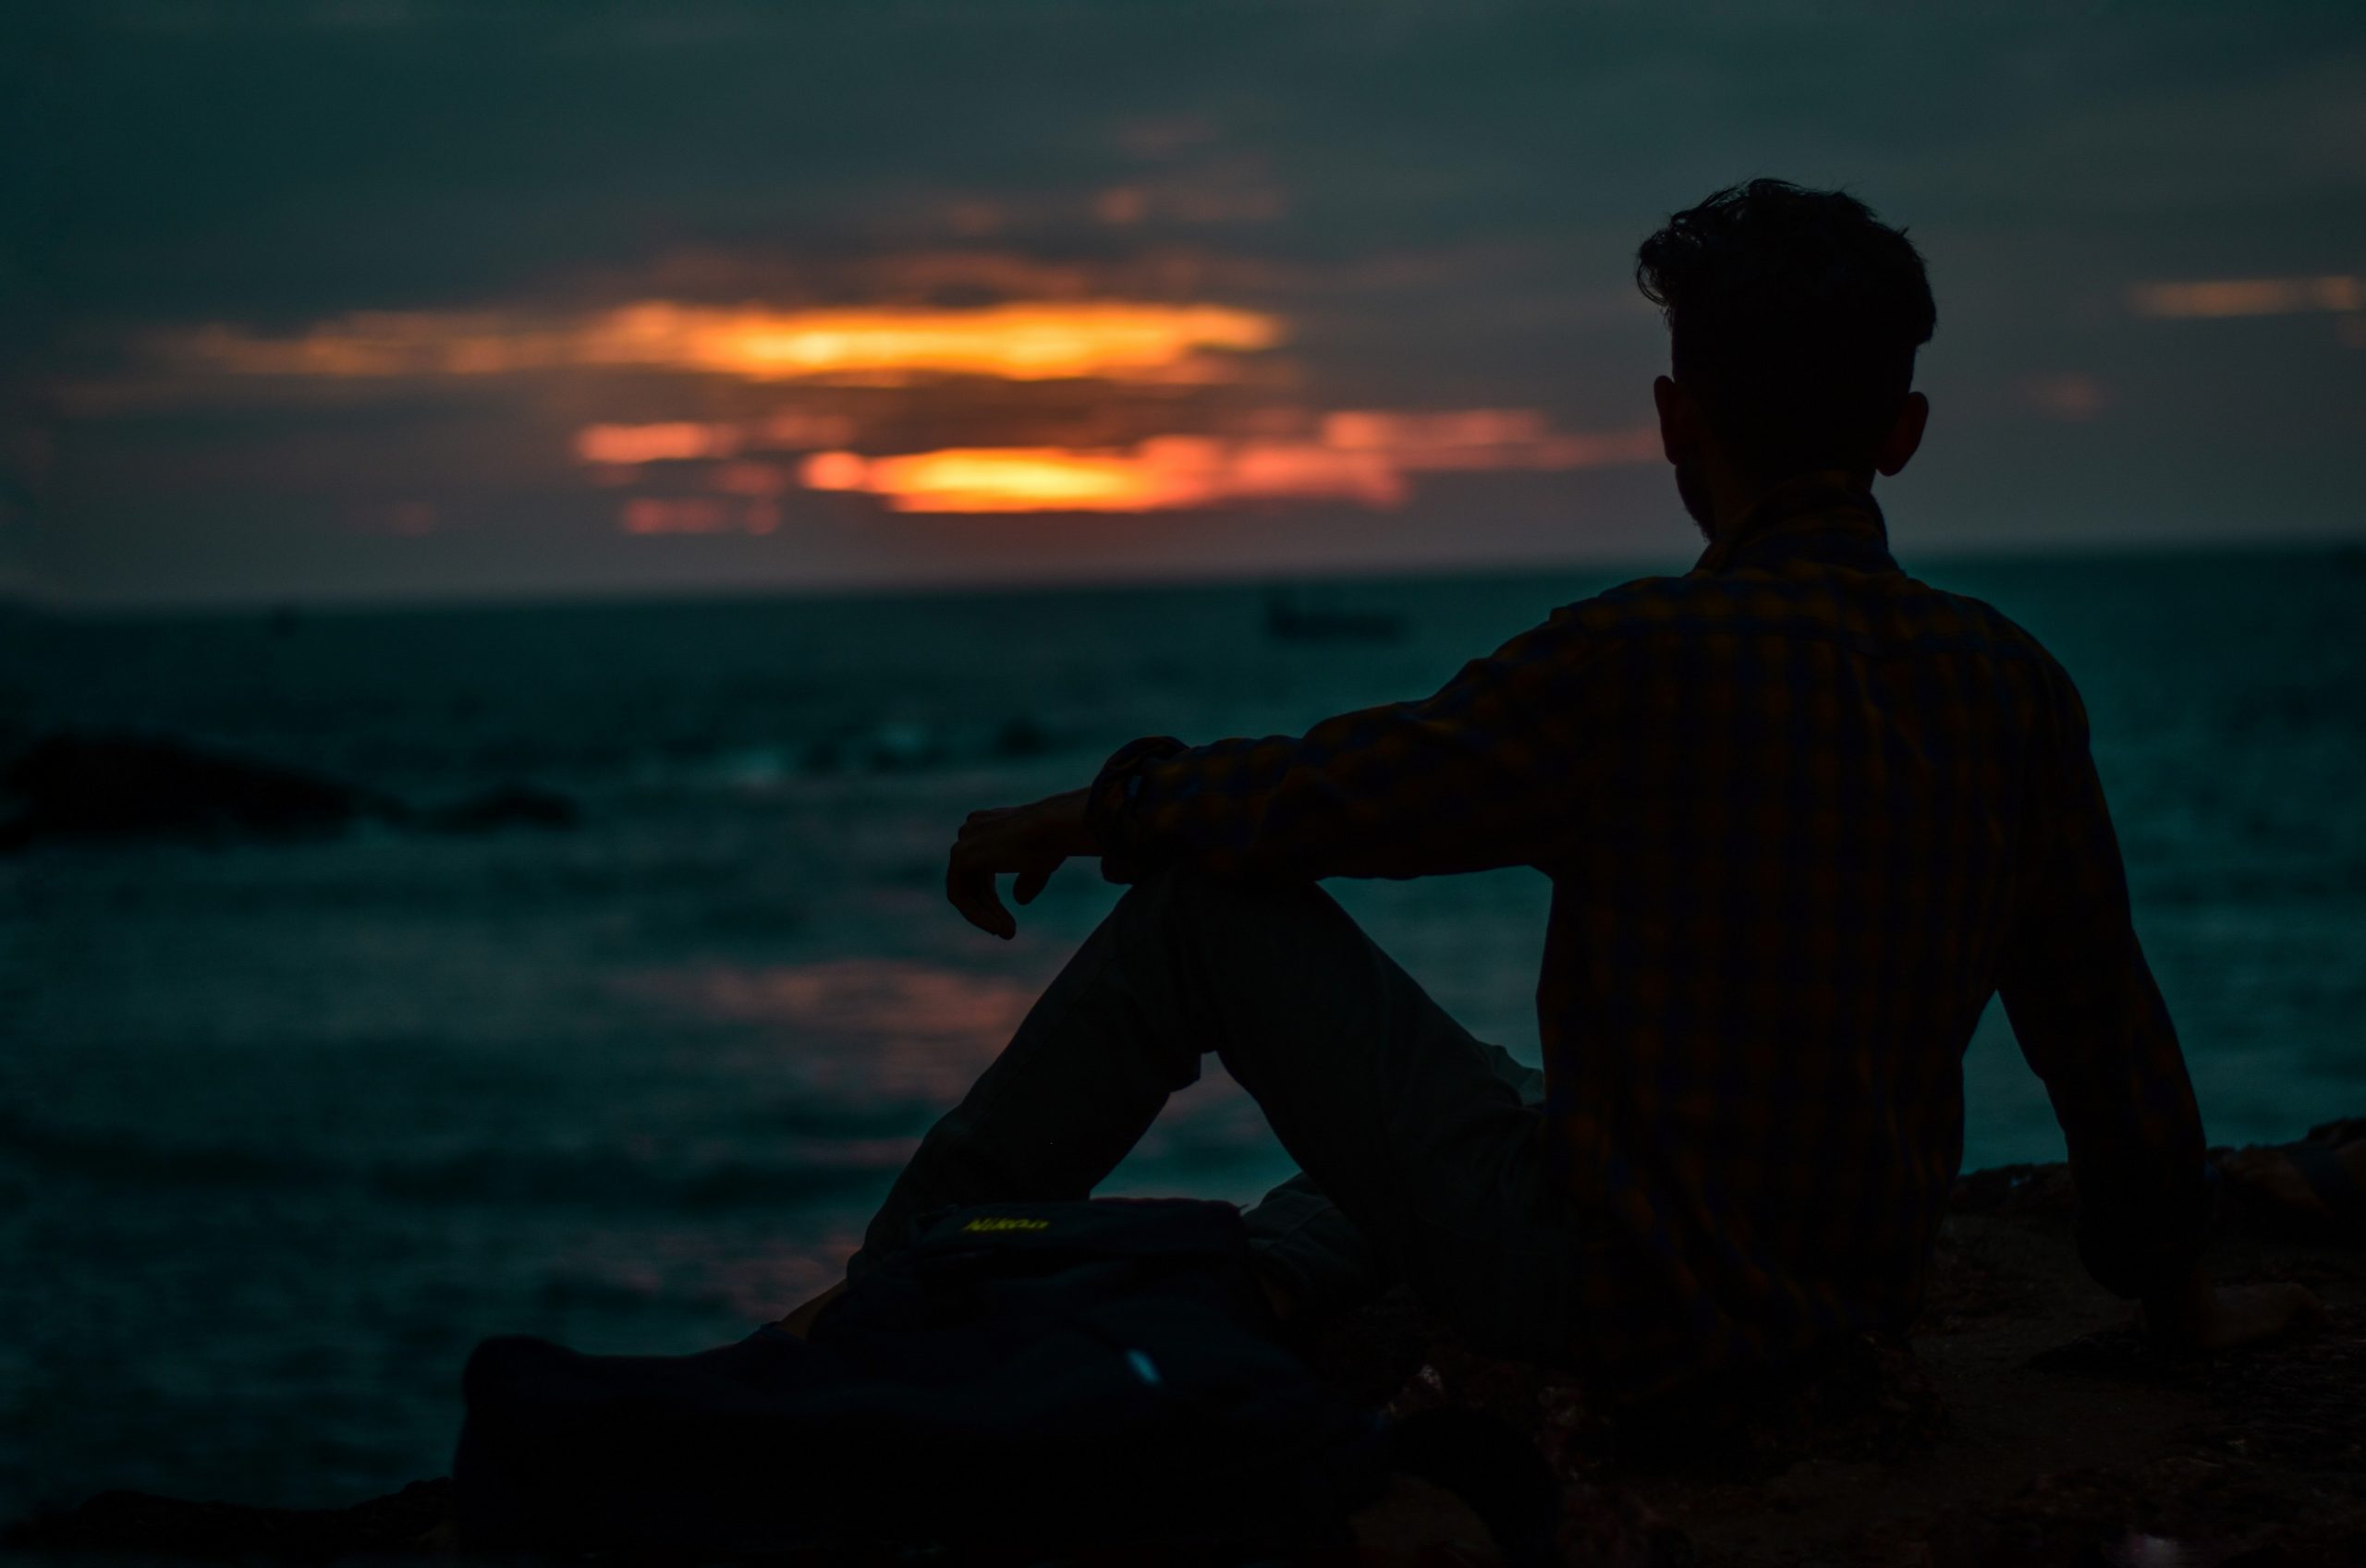 A boy facing sunset on a beach